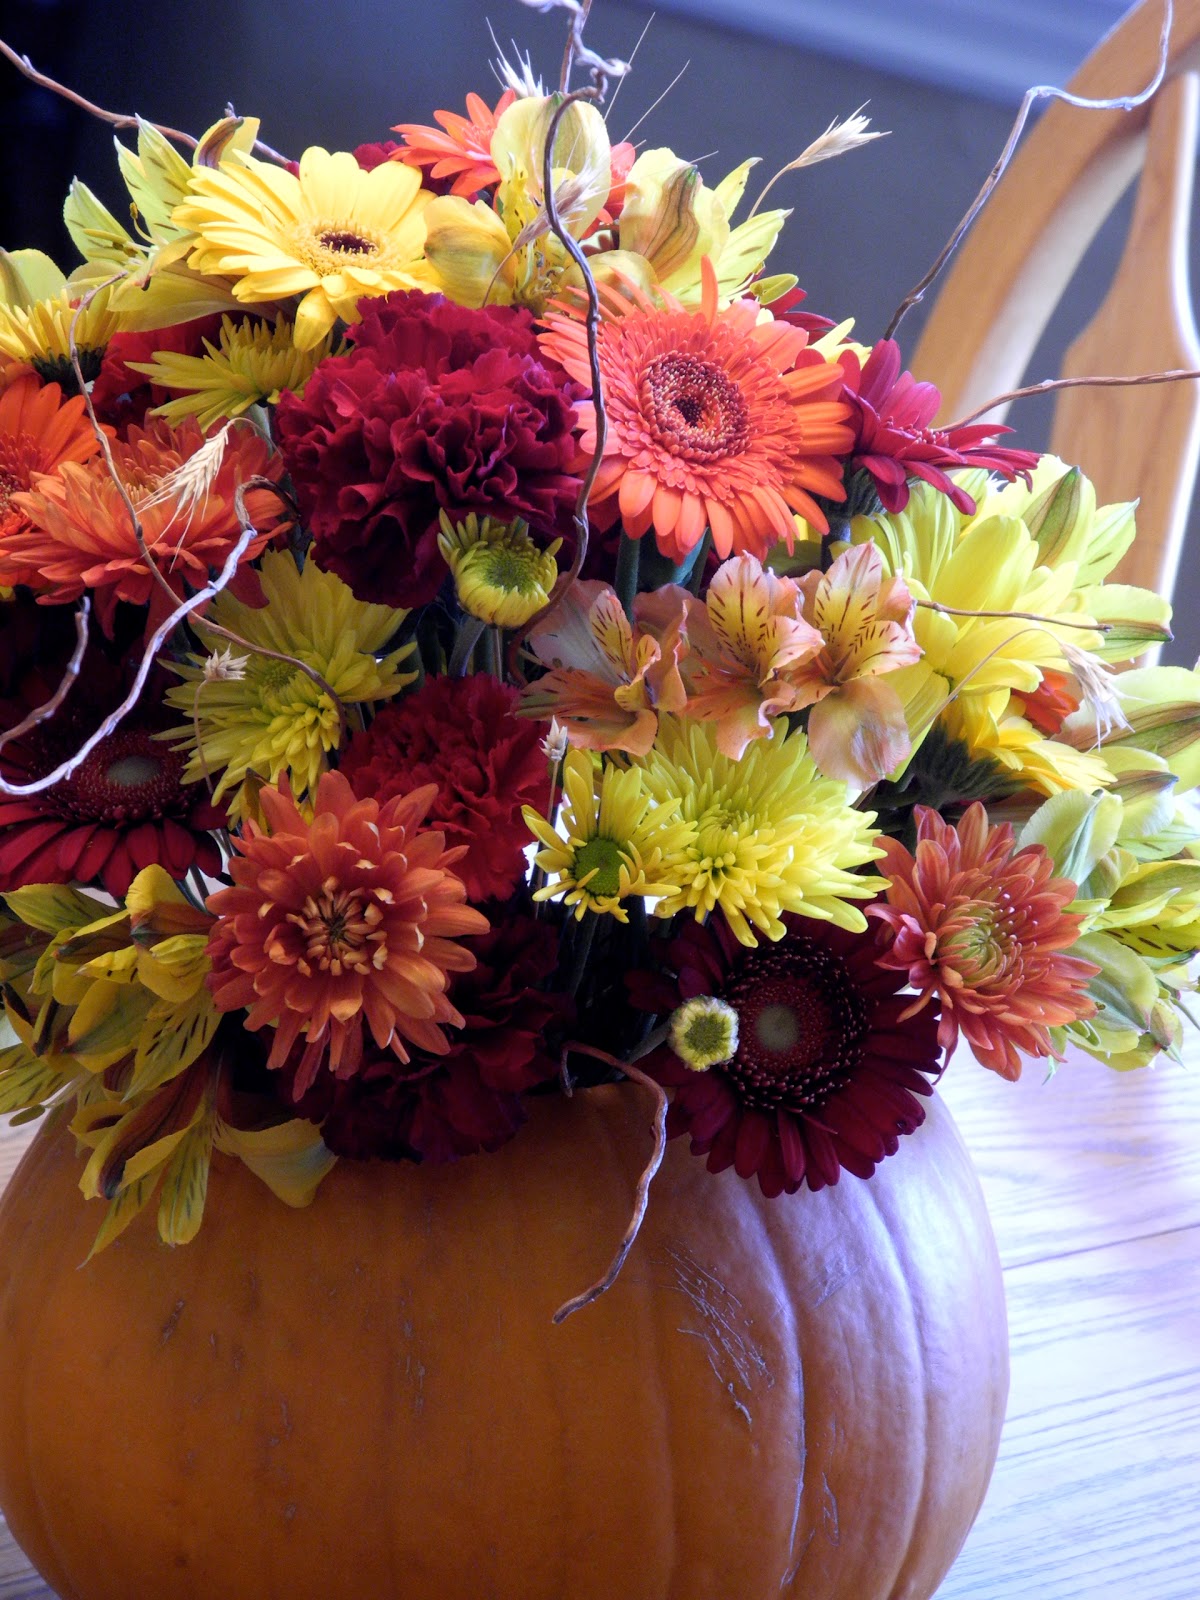 The Flower Girl Blog: fall flowers and a pumpkin